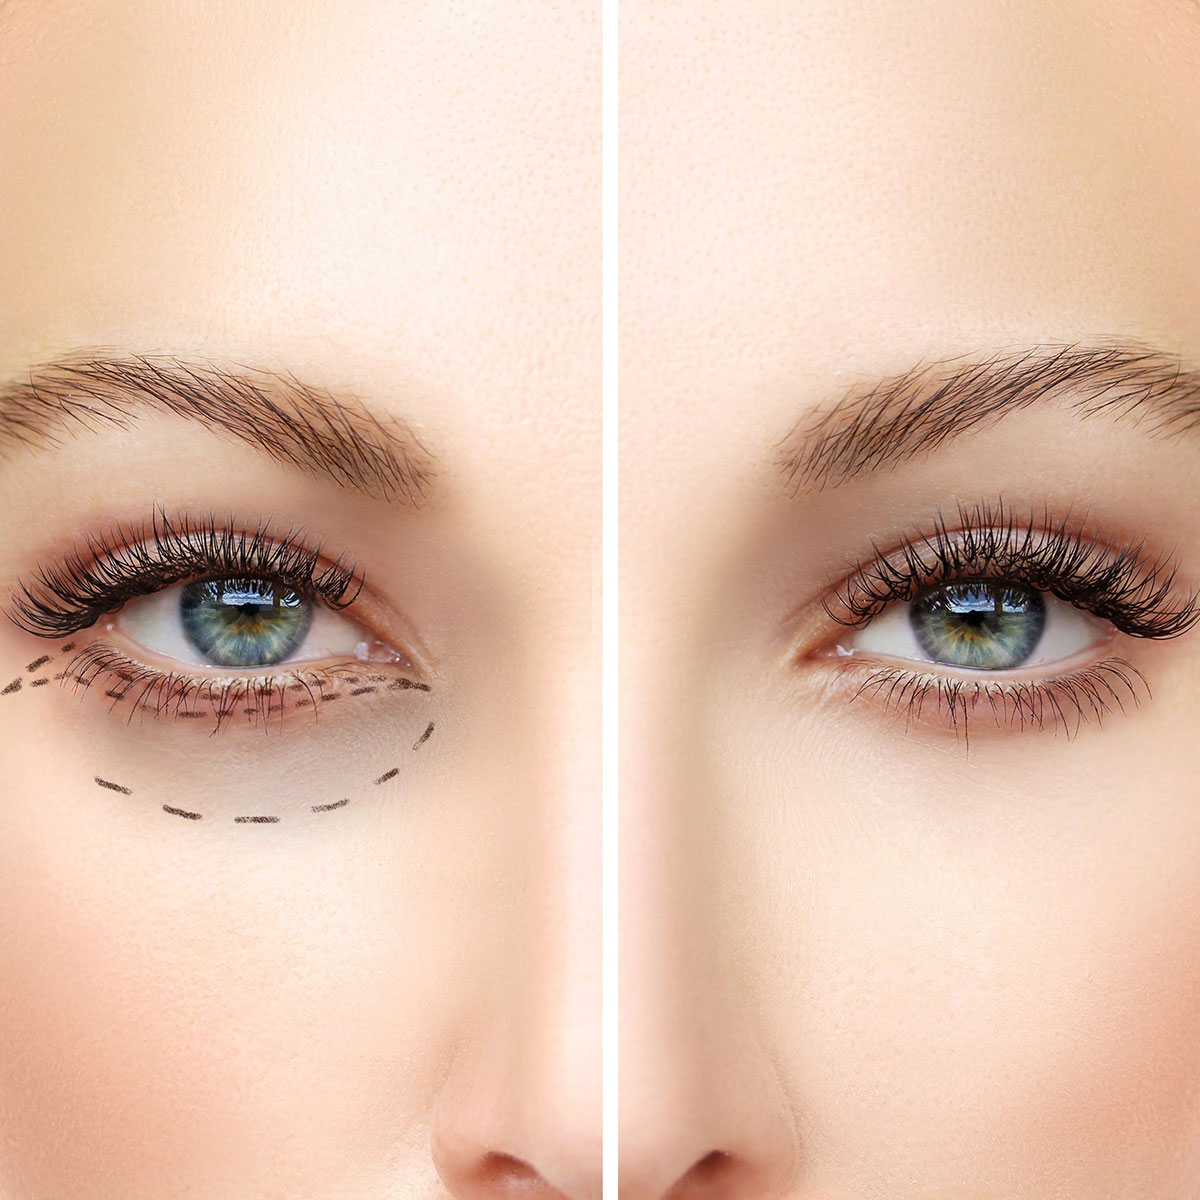 Blepharoplasty(surgery-of-eyelids-)